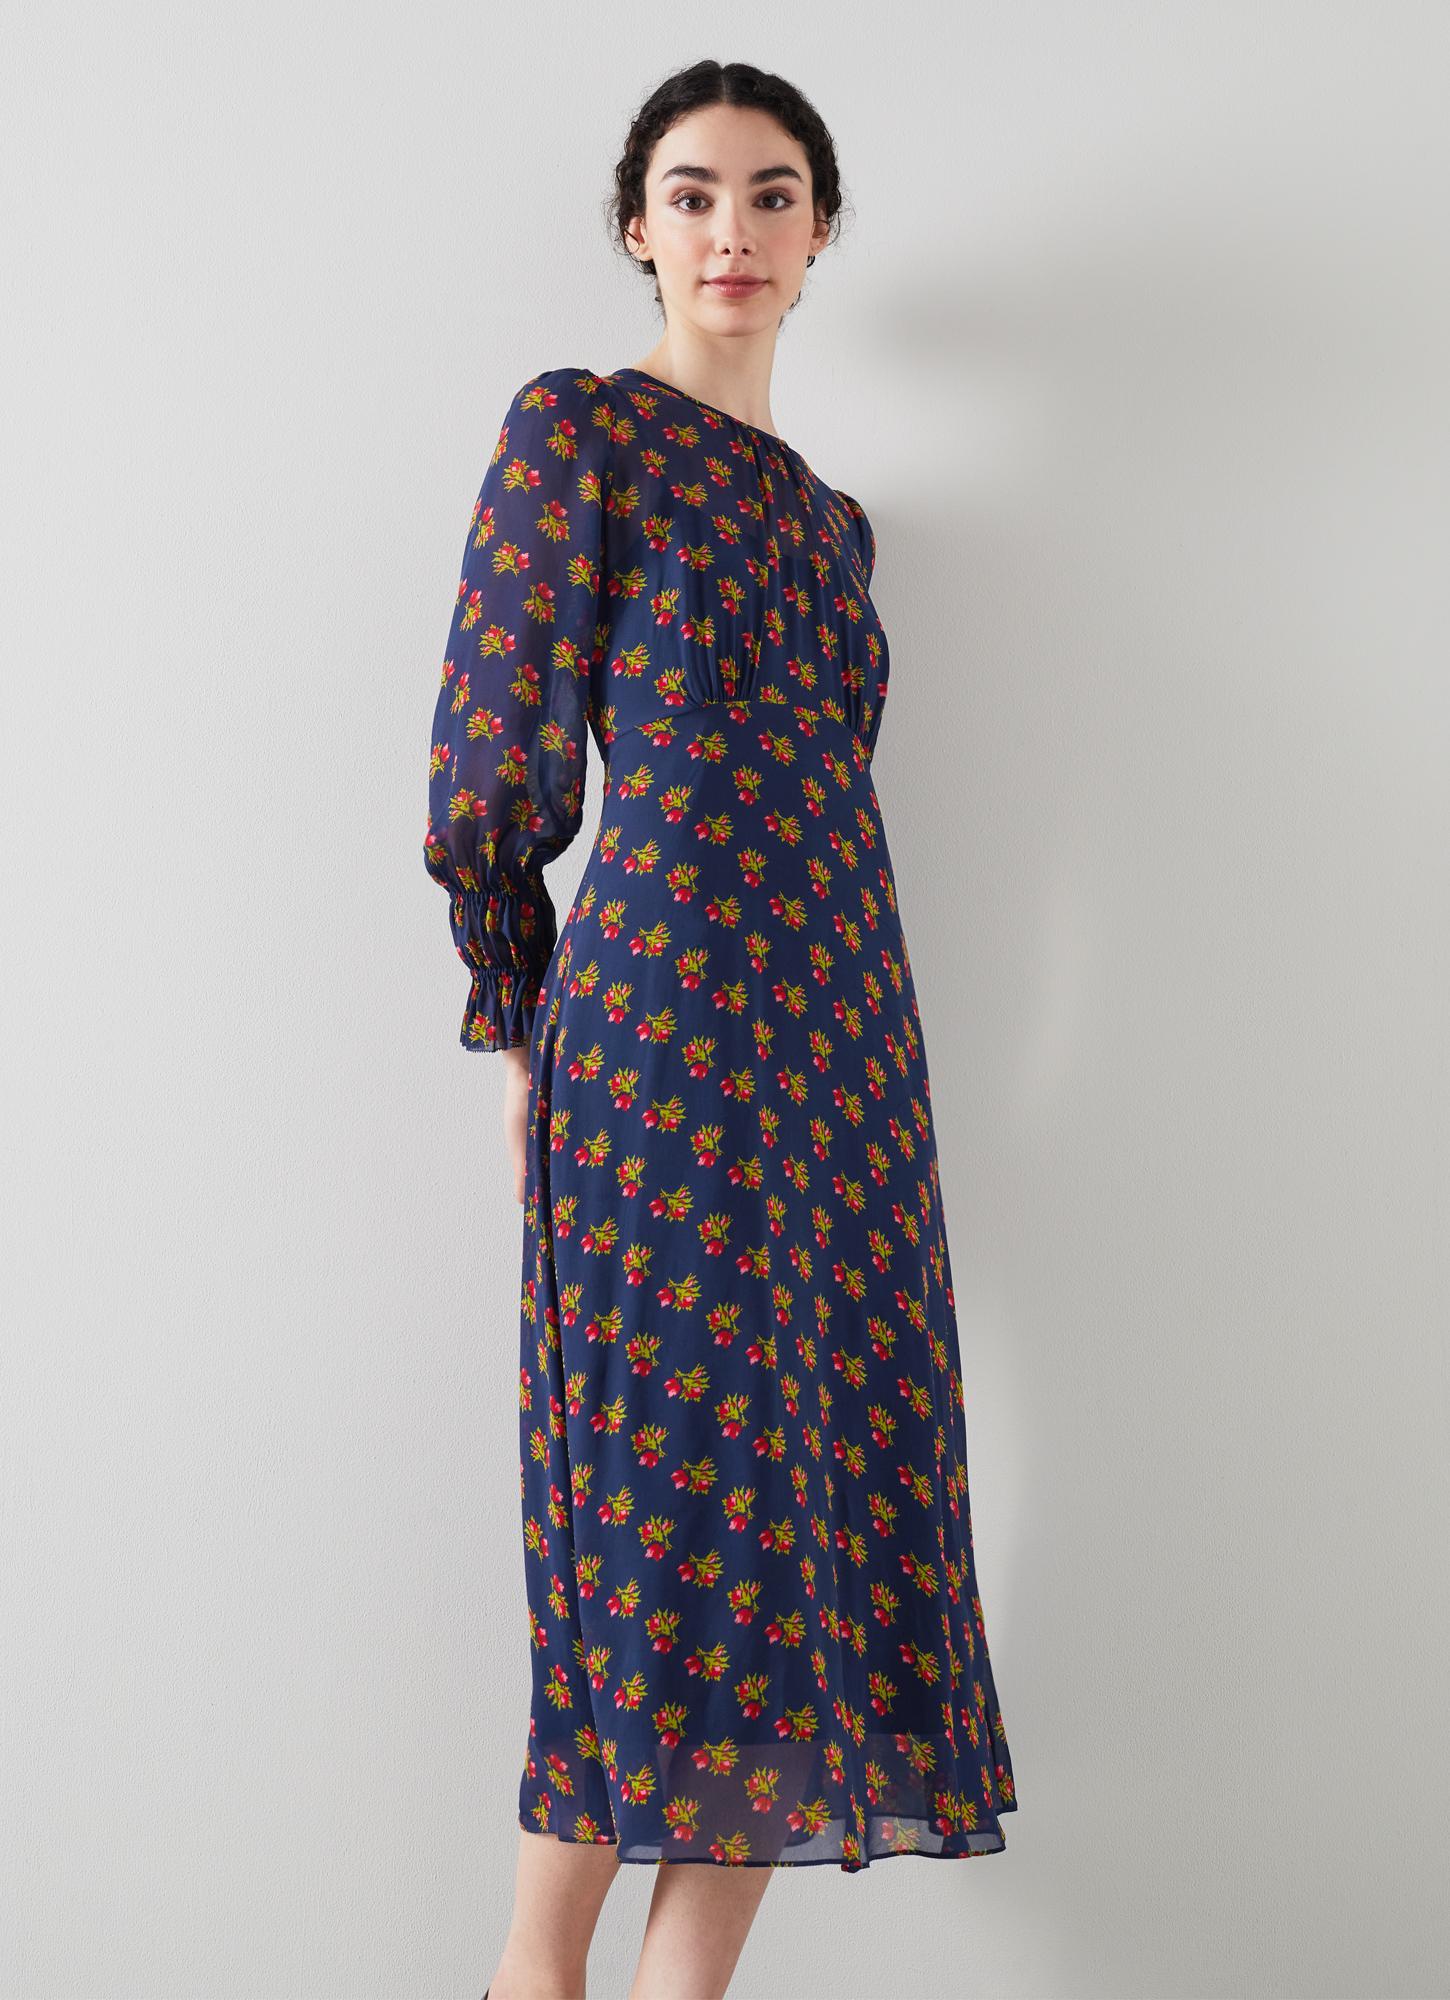 L.K.Bennett Wren Navy Rosebud Print Dress, Midnight